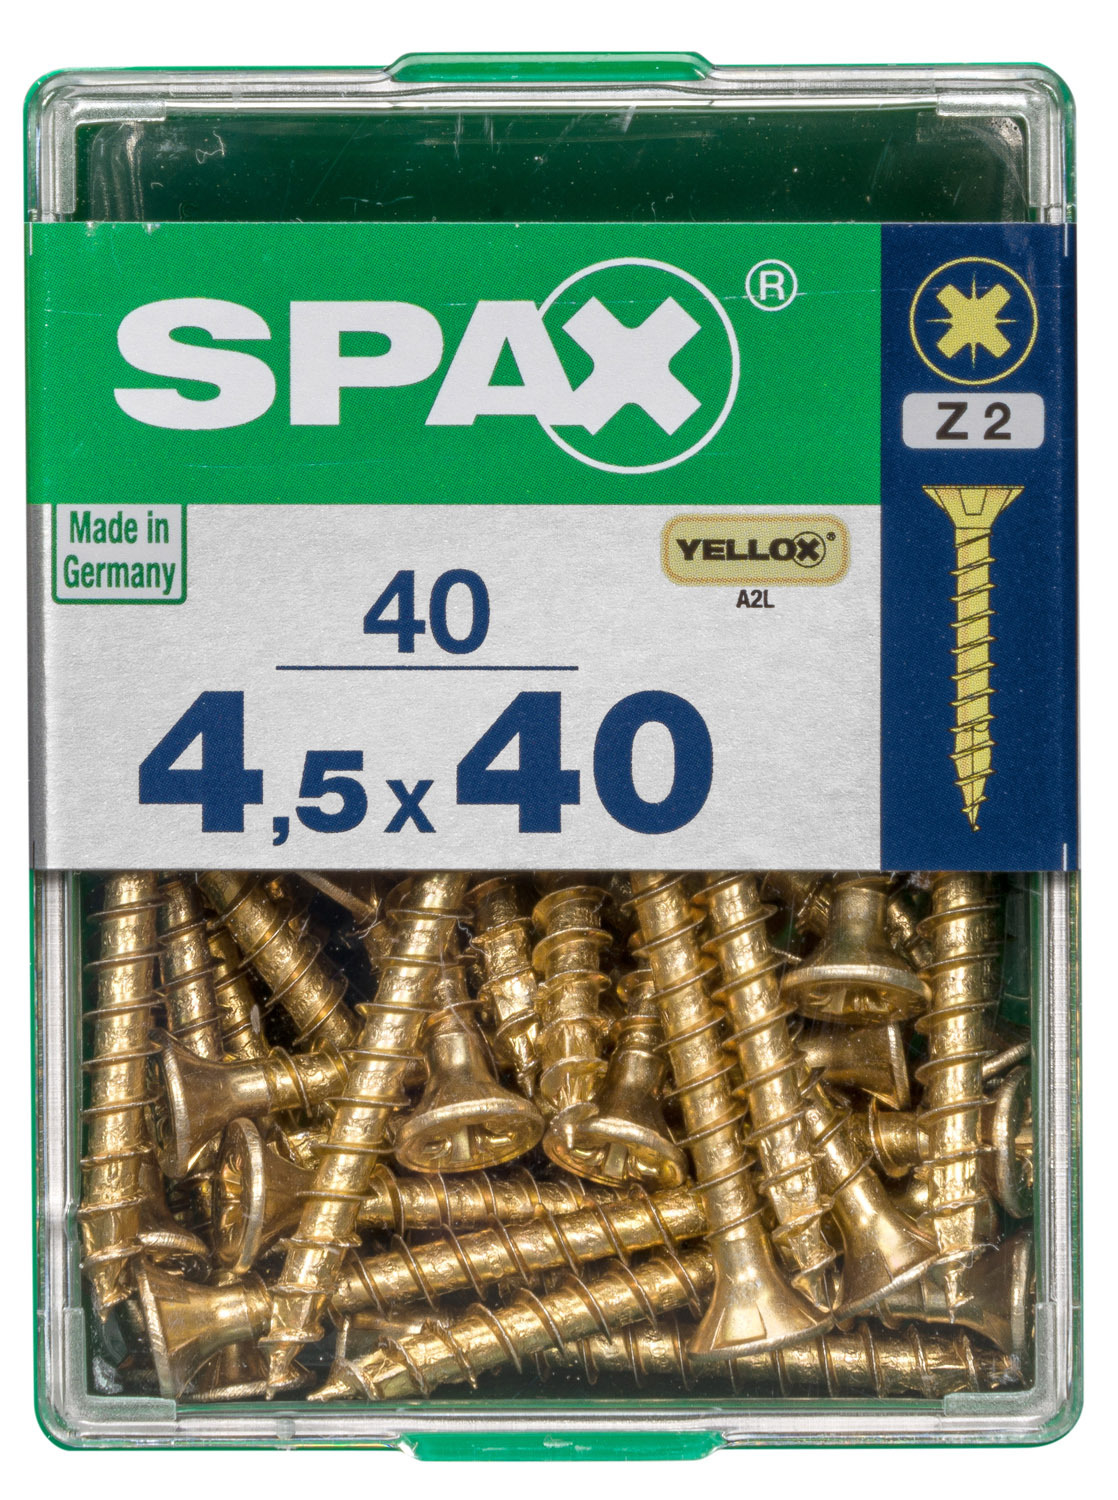 SPAX INTERNATIONAL GMBH & CO. KG - ENNEP Universalschrauben gelb vz VG 4,5x40 mm SeKo Pozi Pack M (40 Stück)